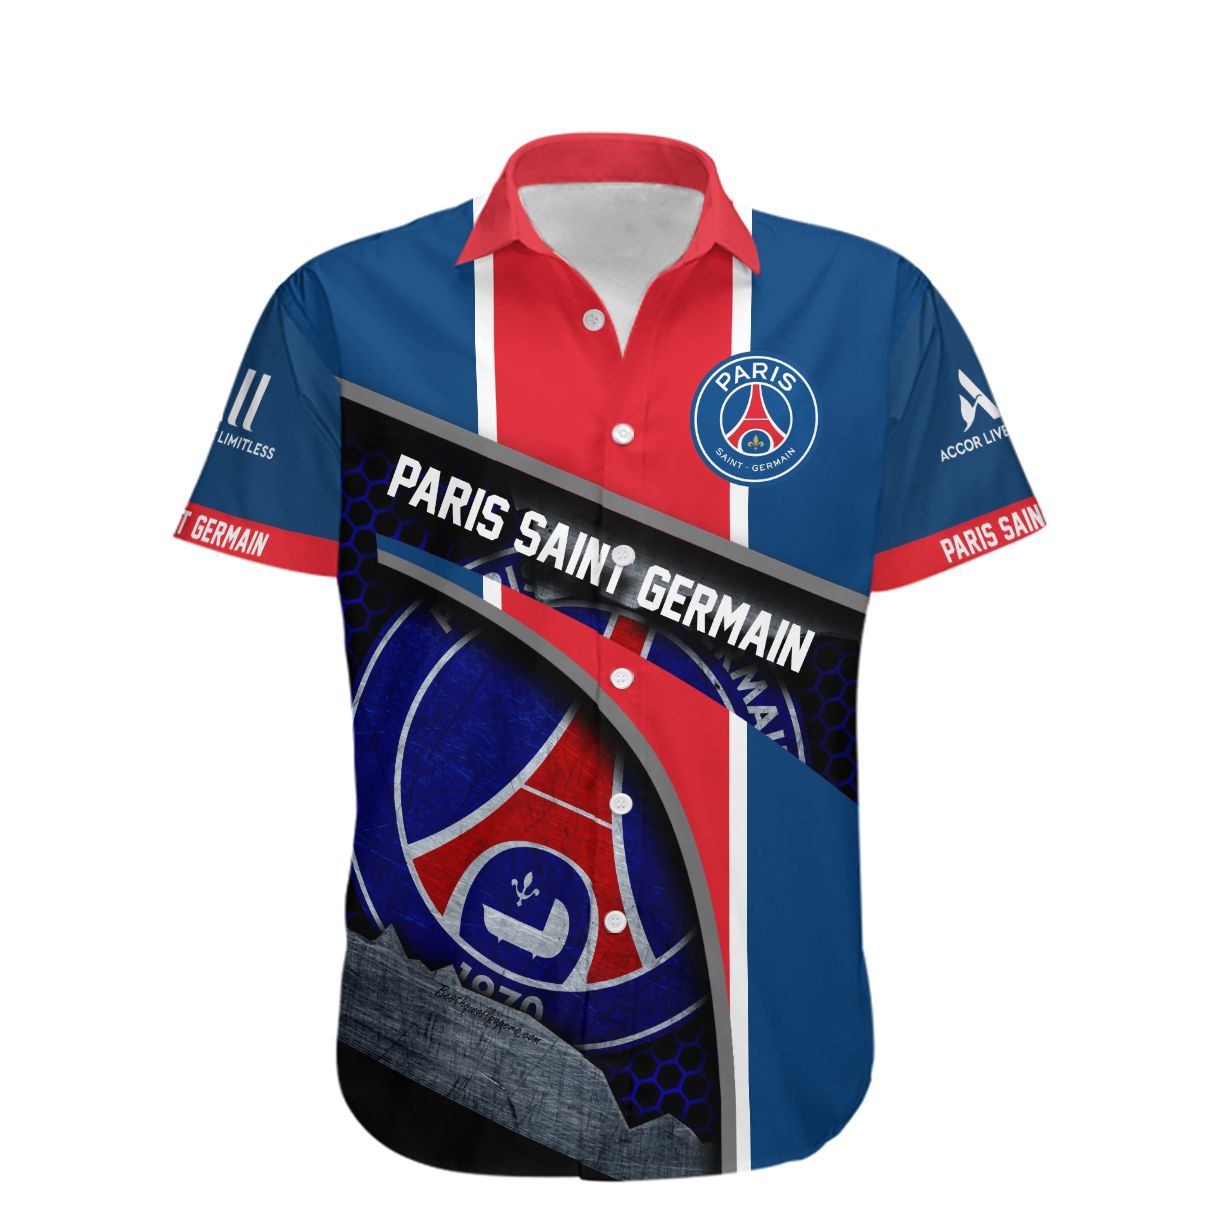 Paris Saint Germain Hawaiian shirt 1